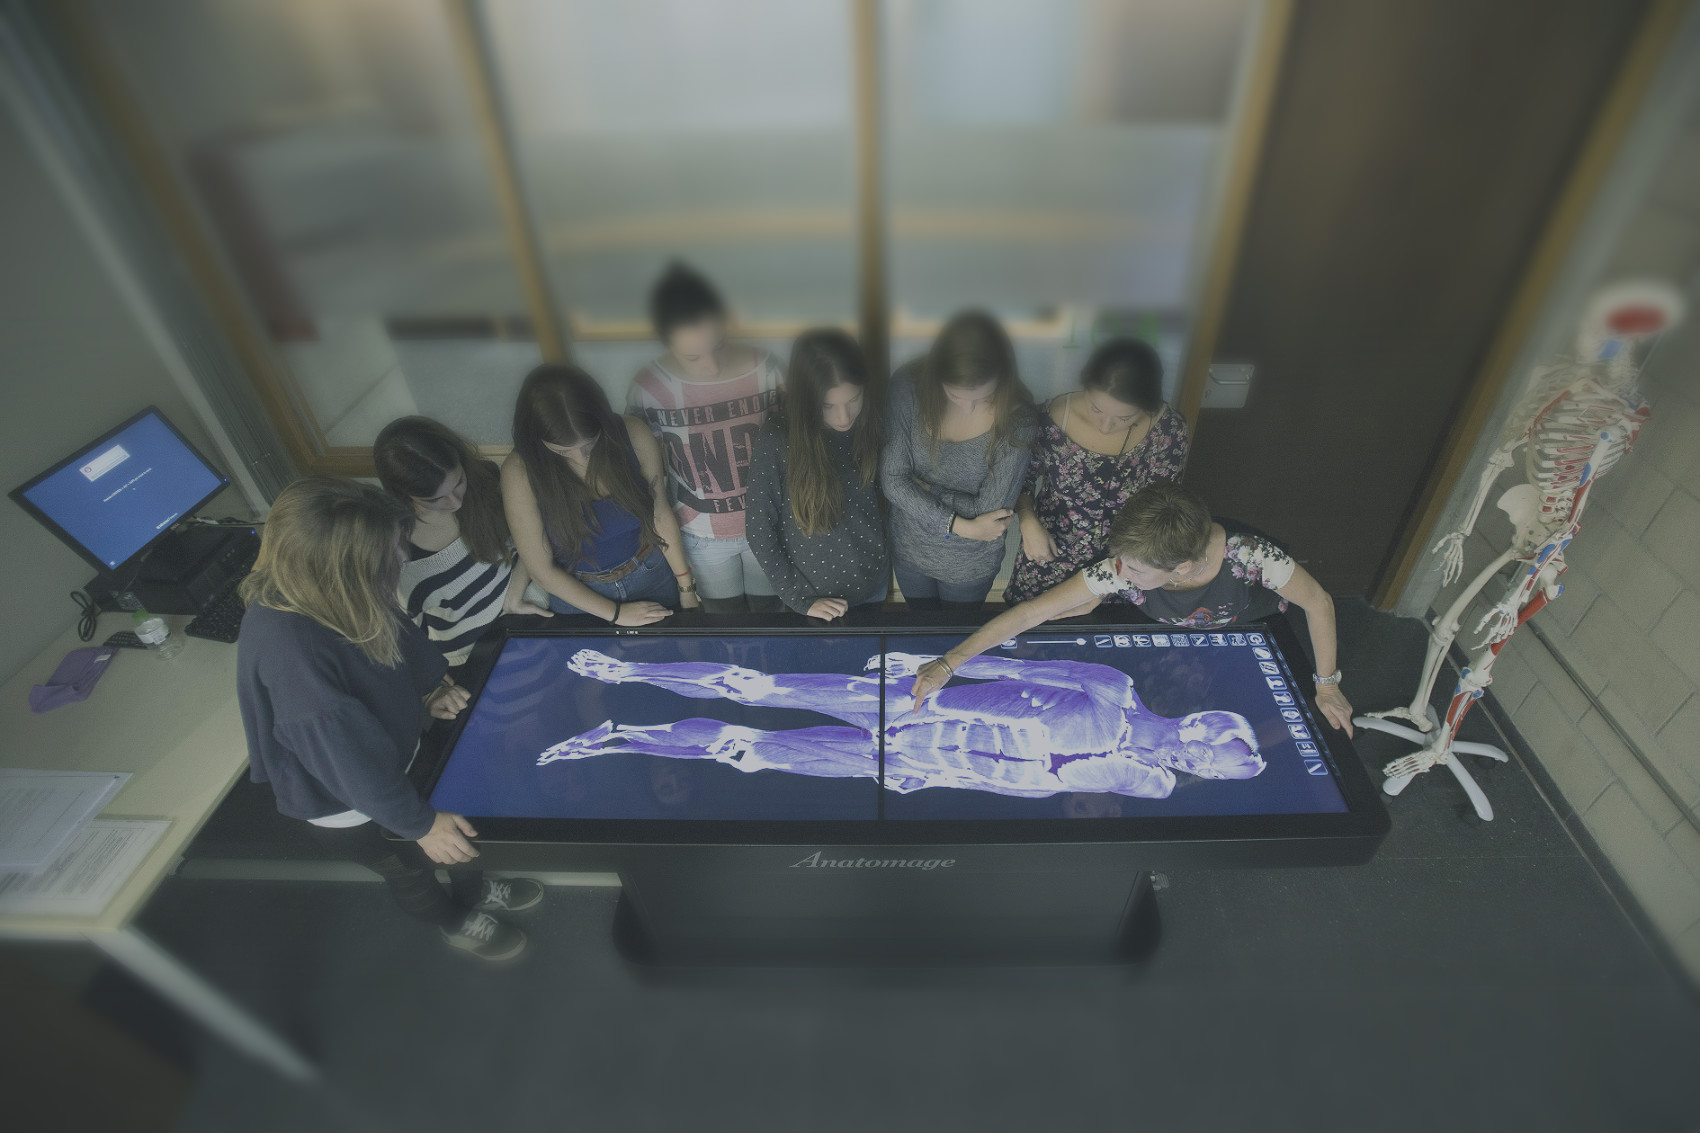 Anatomage Table - виртуальный интерактивный анатомический стол (Анатомаж)